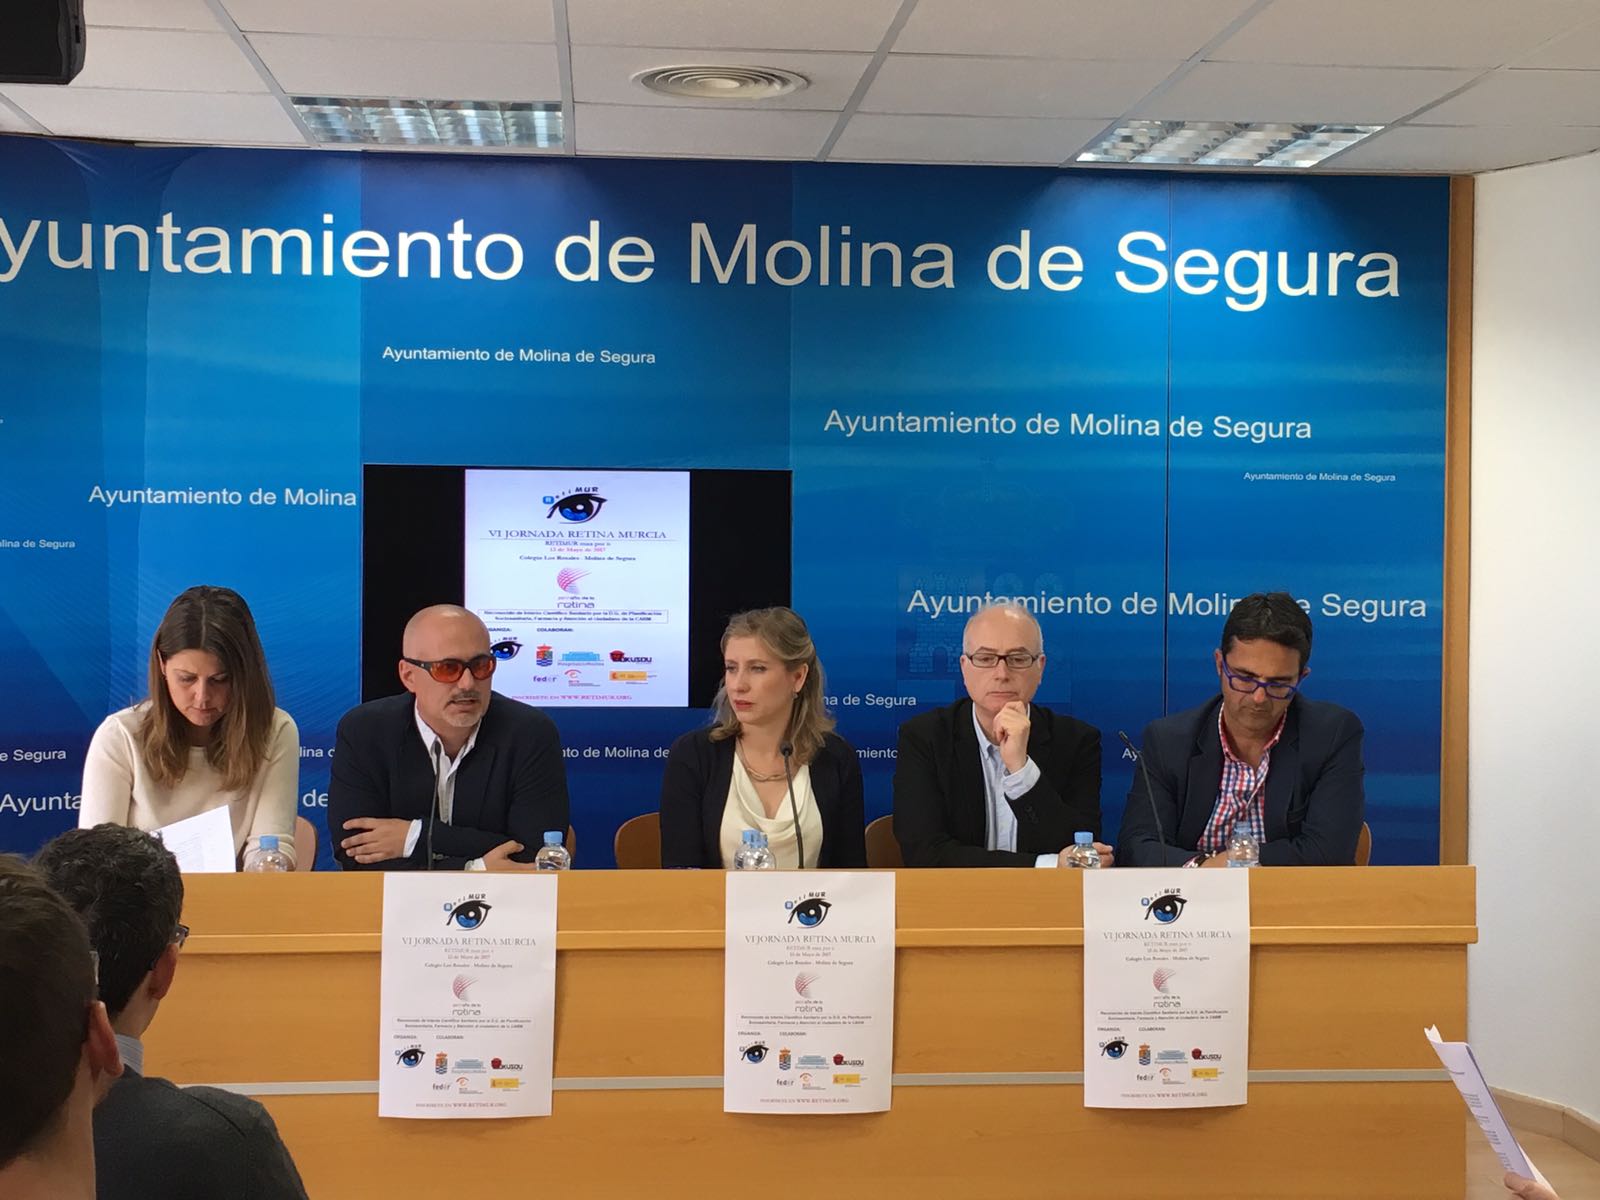 Imagen de la presentación de la VI Jornada Retina Murcia en el Ayuntamiento de Molina de Segura